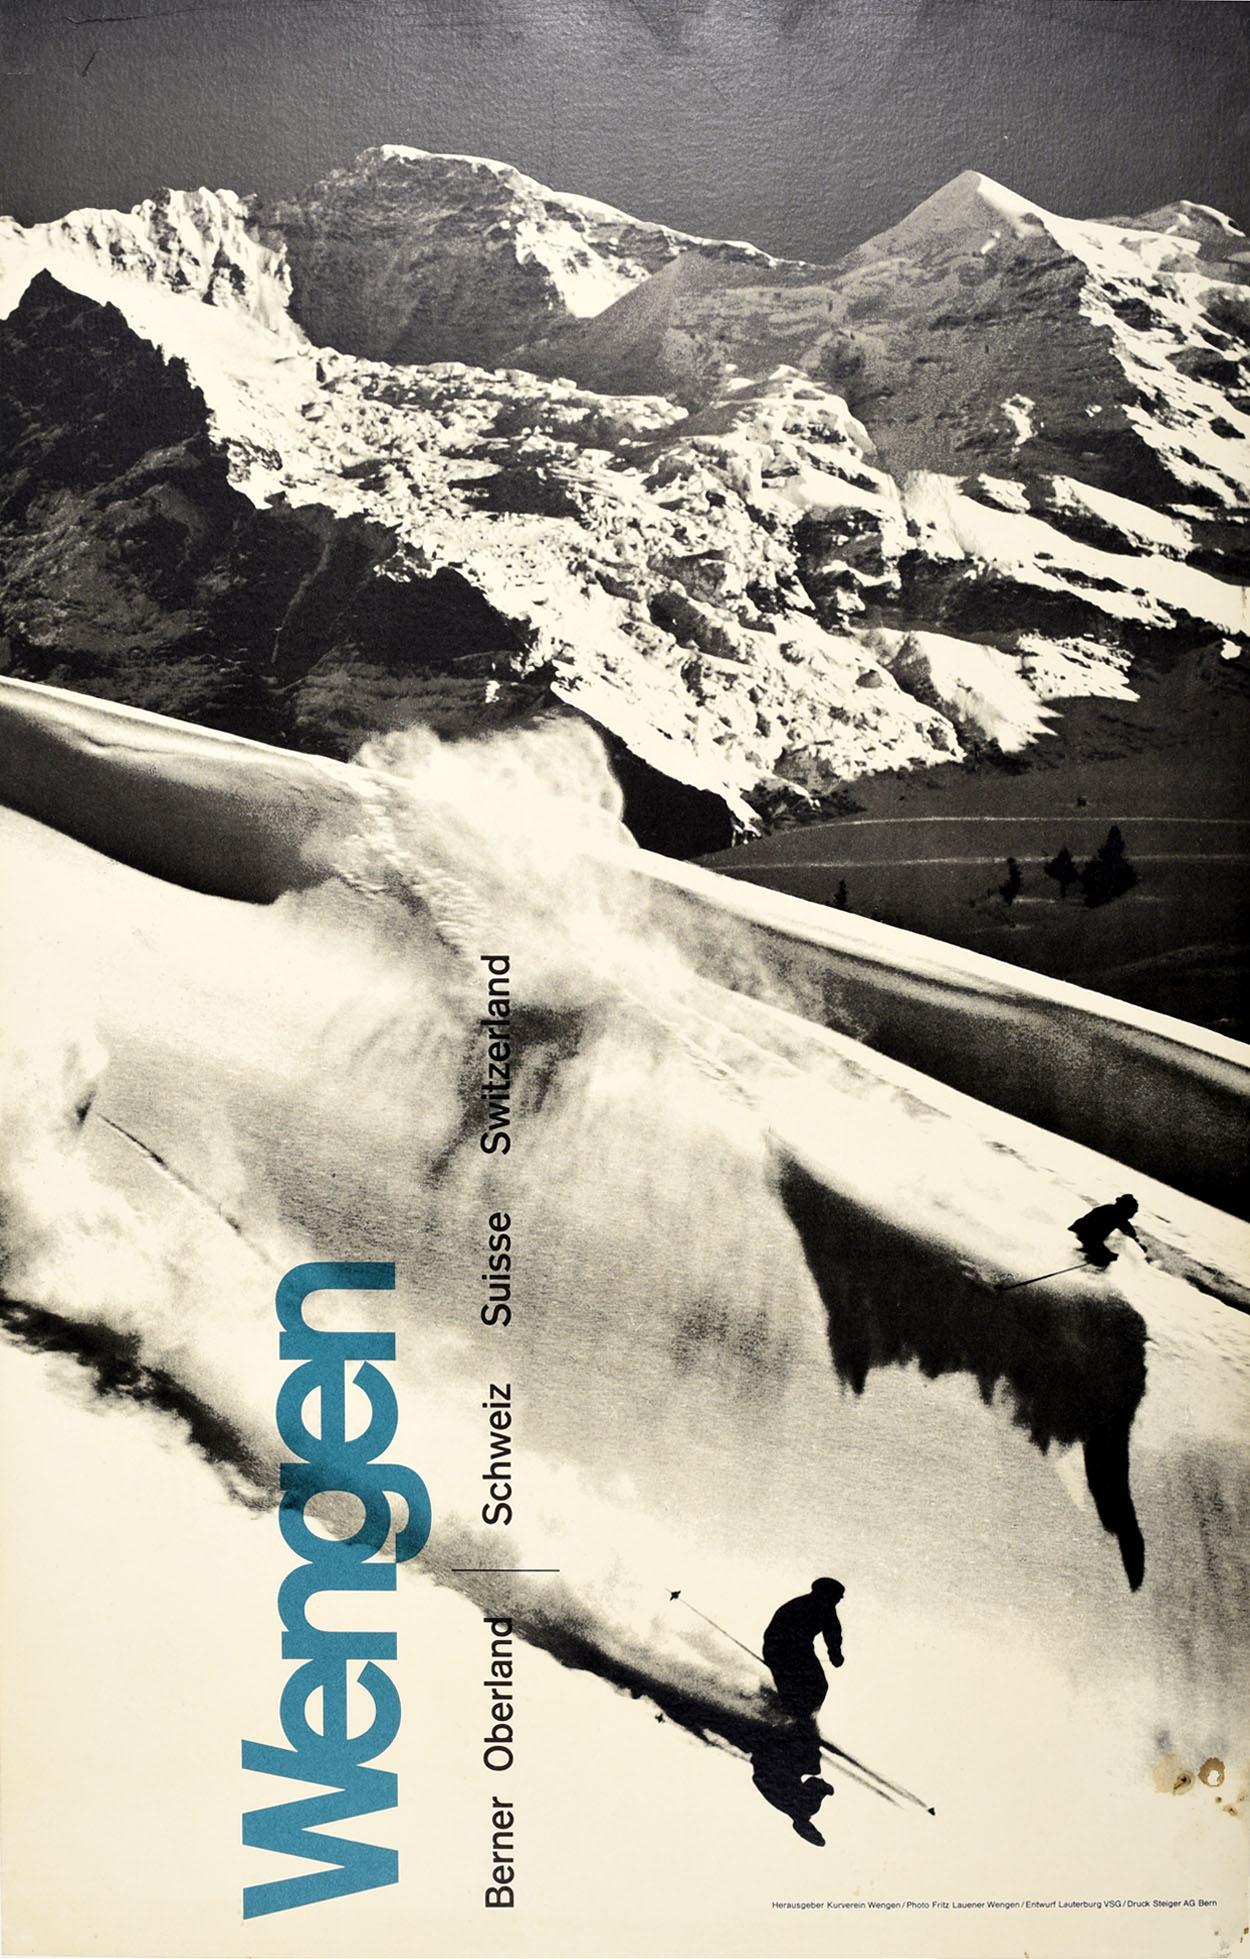 Fritz Lauener Print - Original Vintage Winter Sport Skiing Poster Wengen Berner Oberland Switzerland